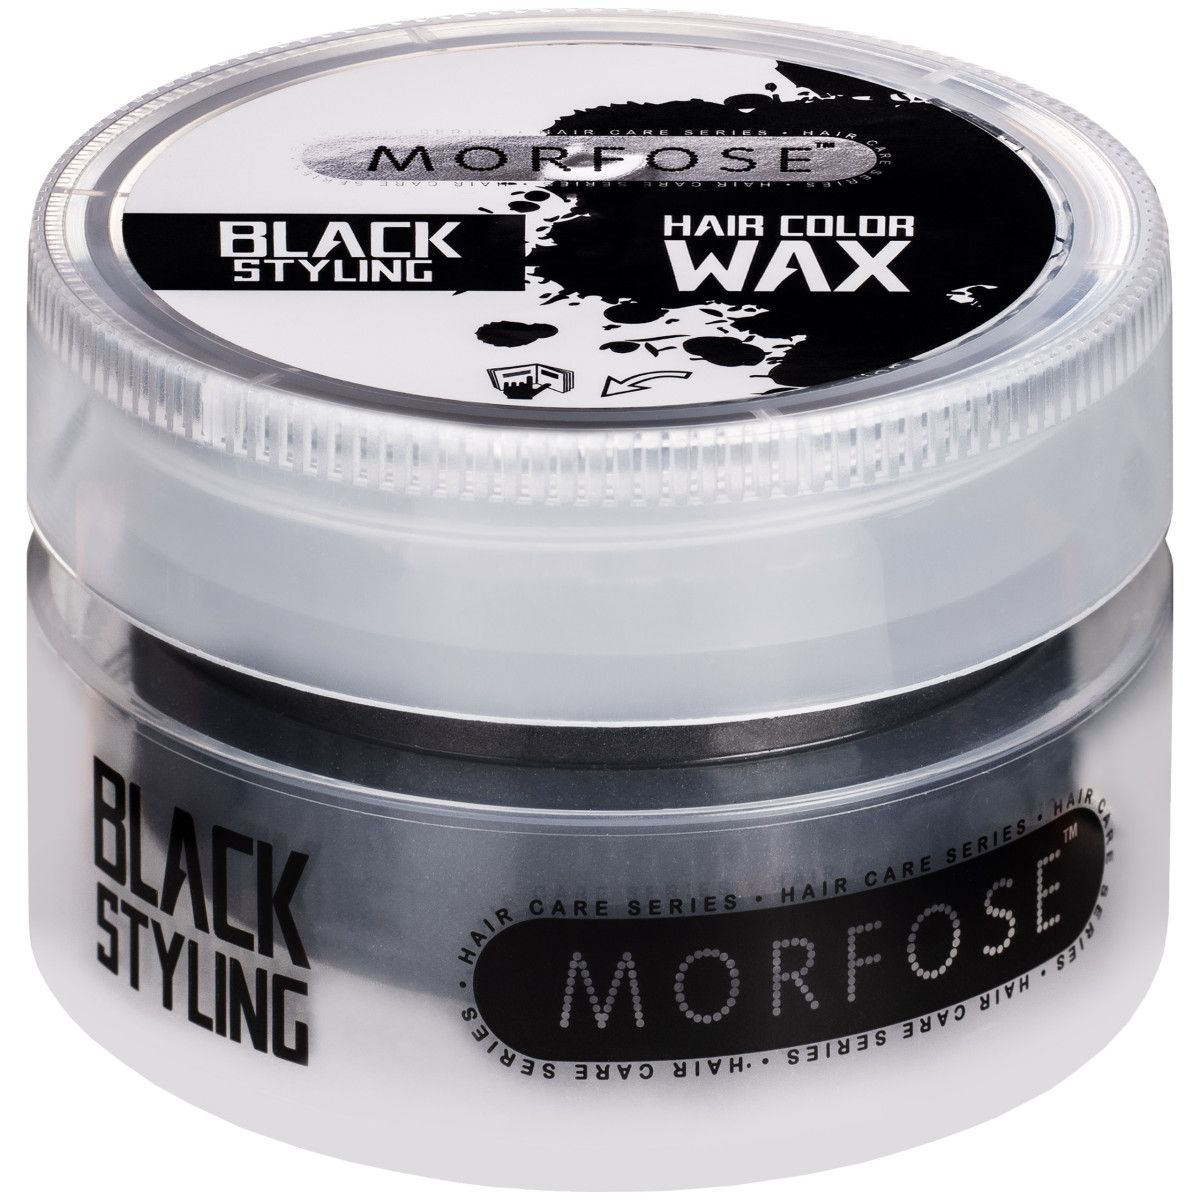 Morfose Hair Color Wax kolor Black | Czarny